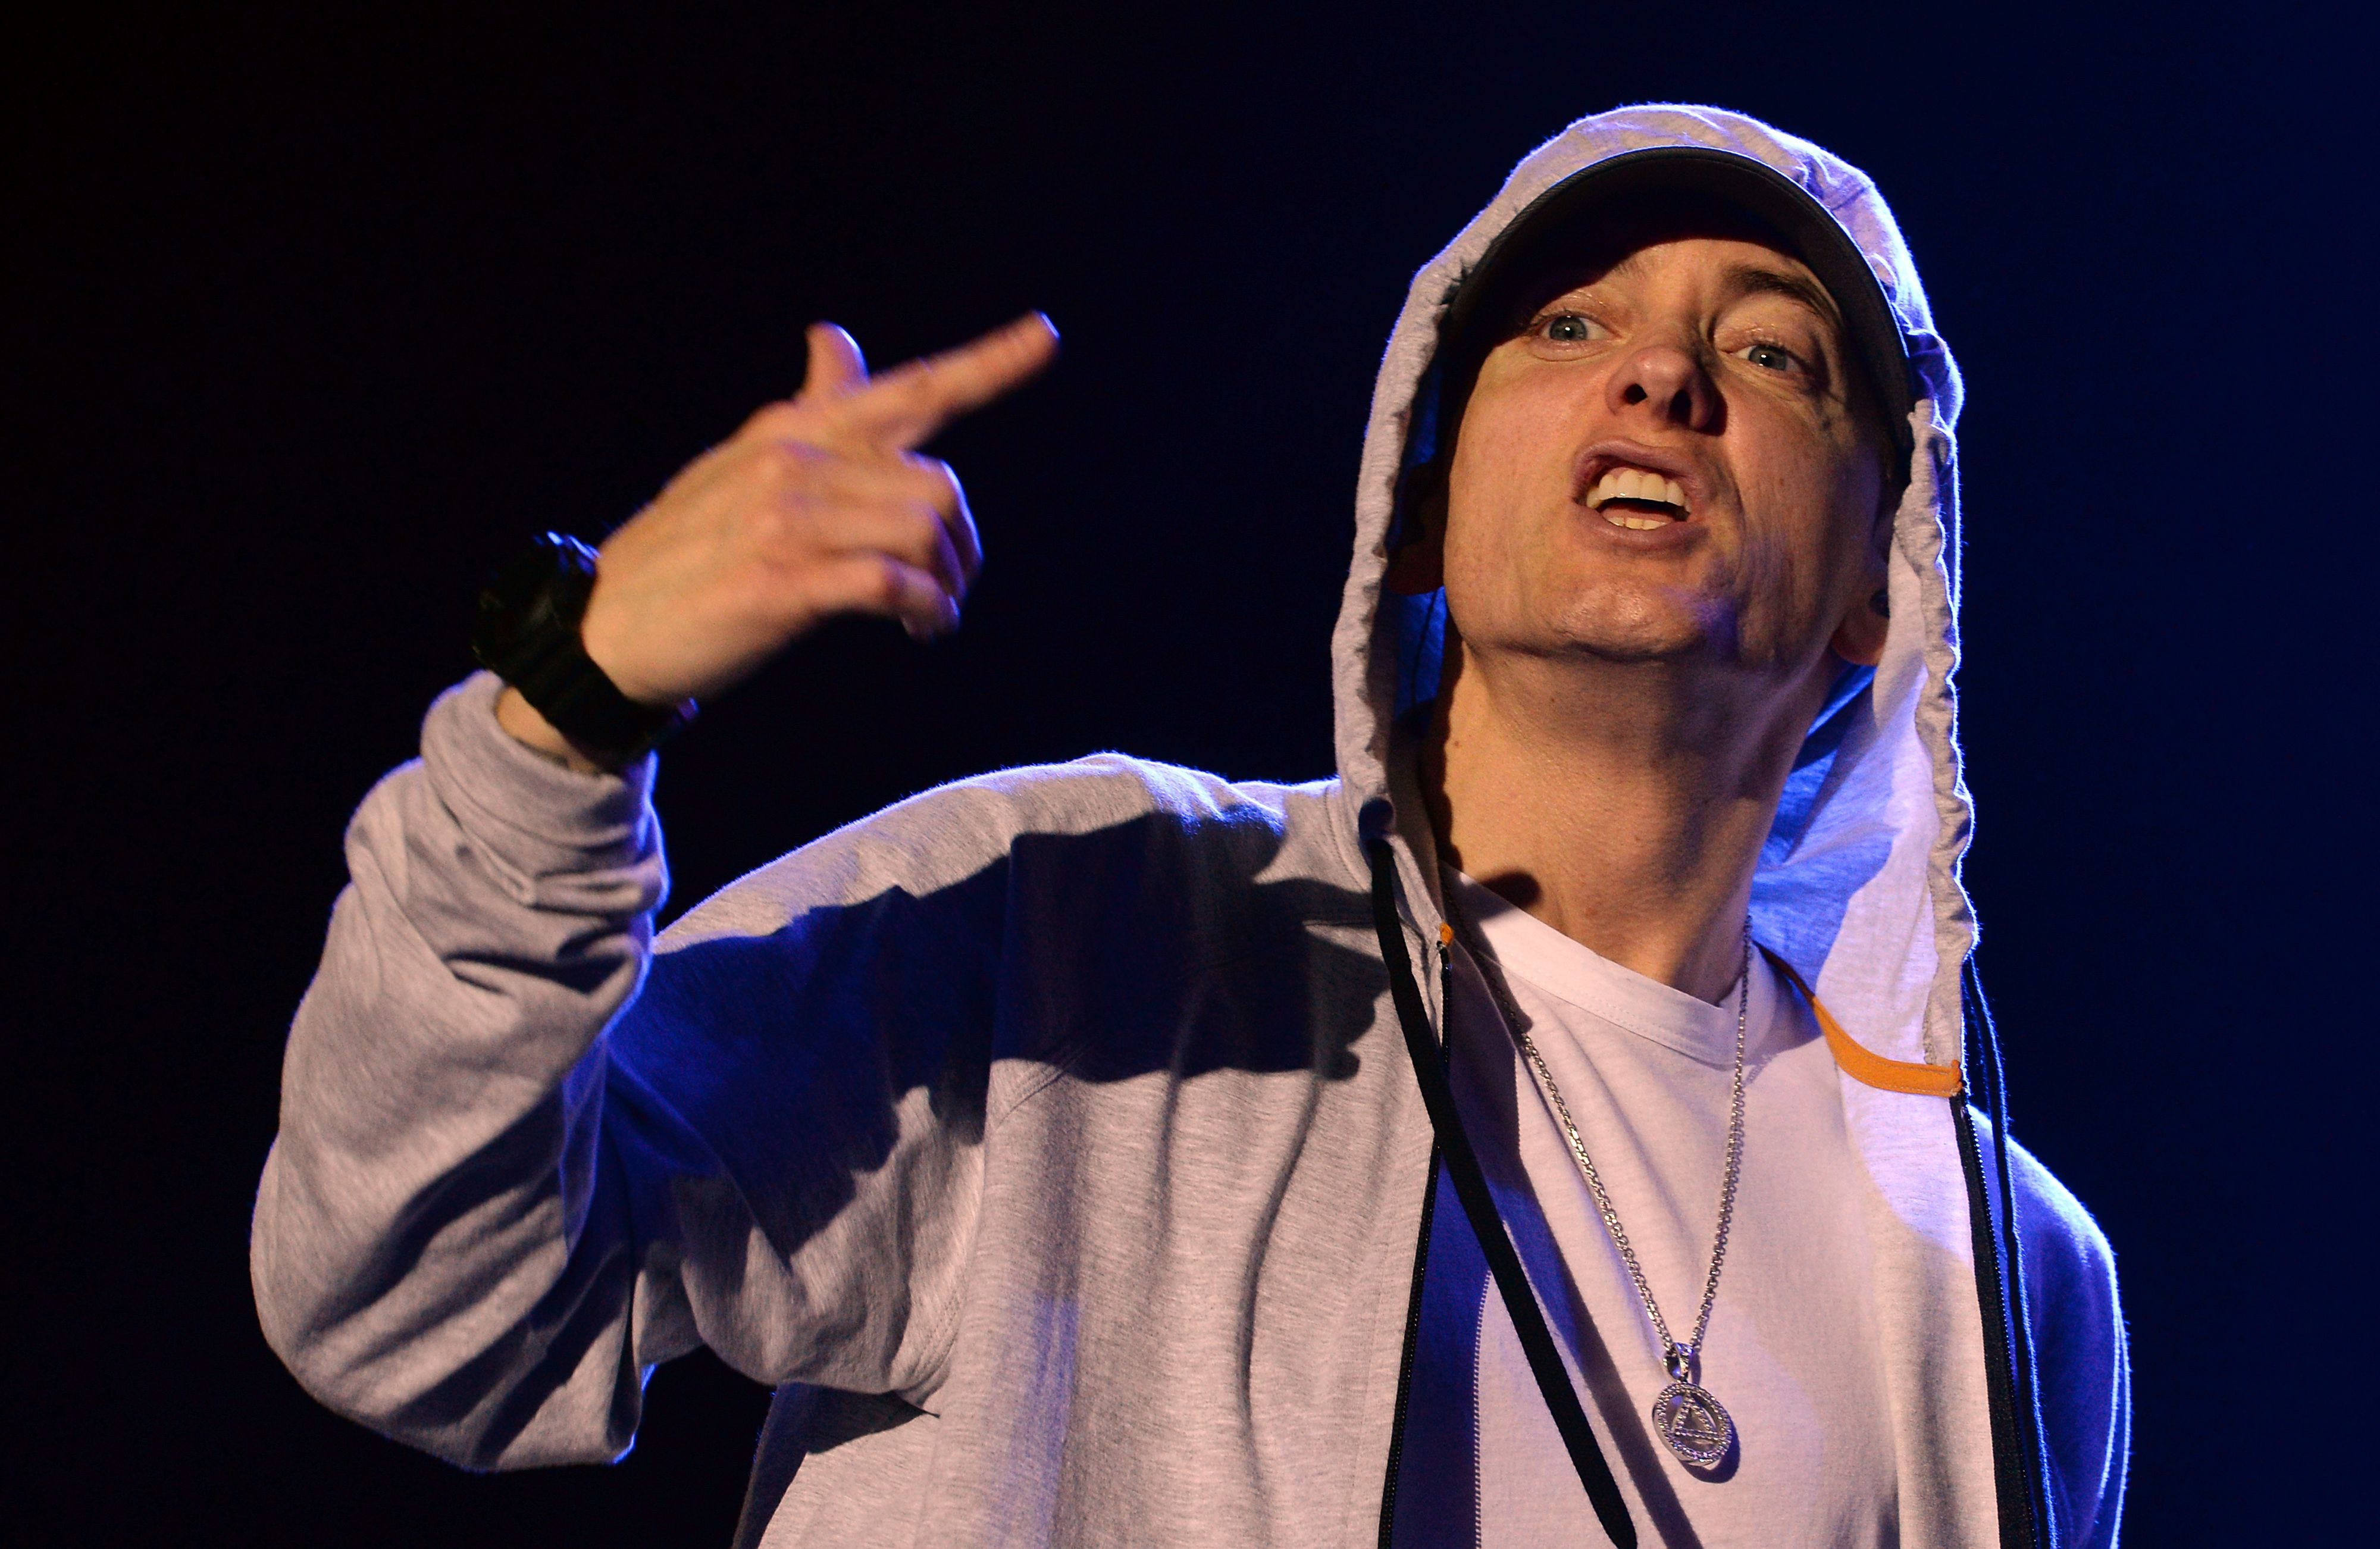 Colin Kaepernick, LeBron James respond to Eminem's rap on Donald Trump